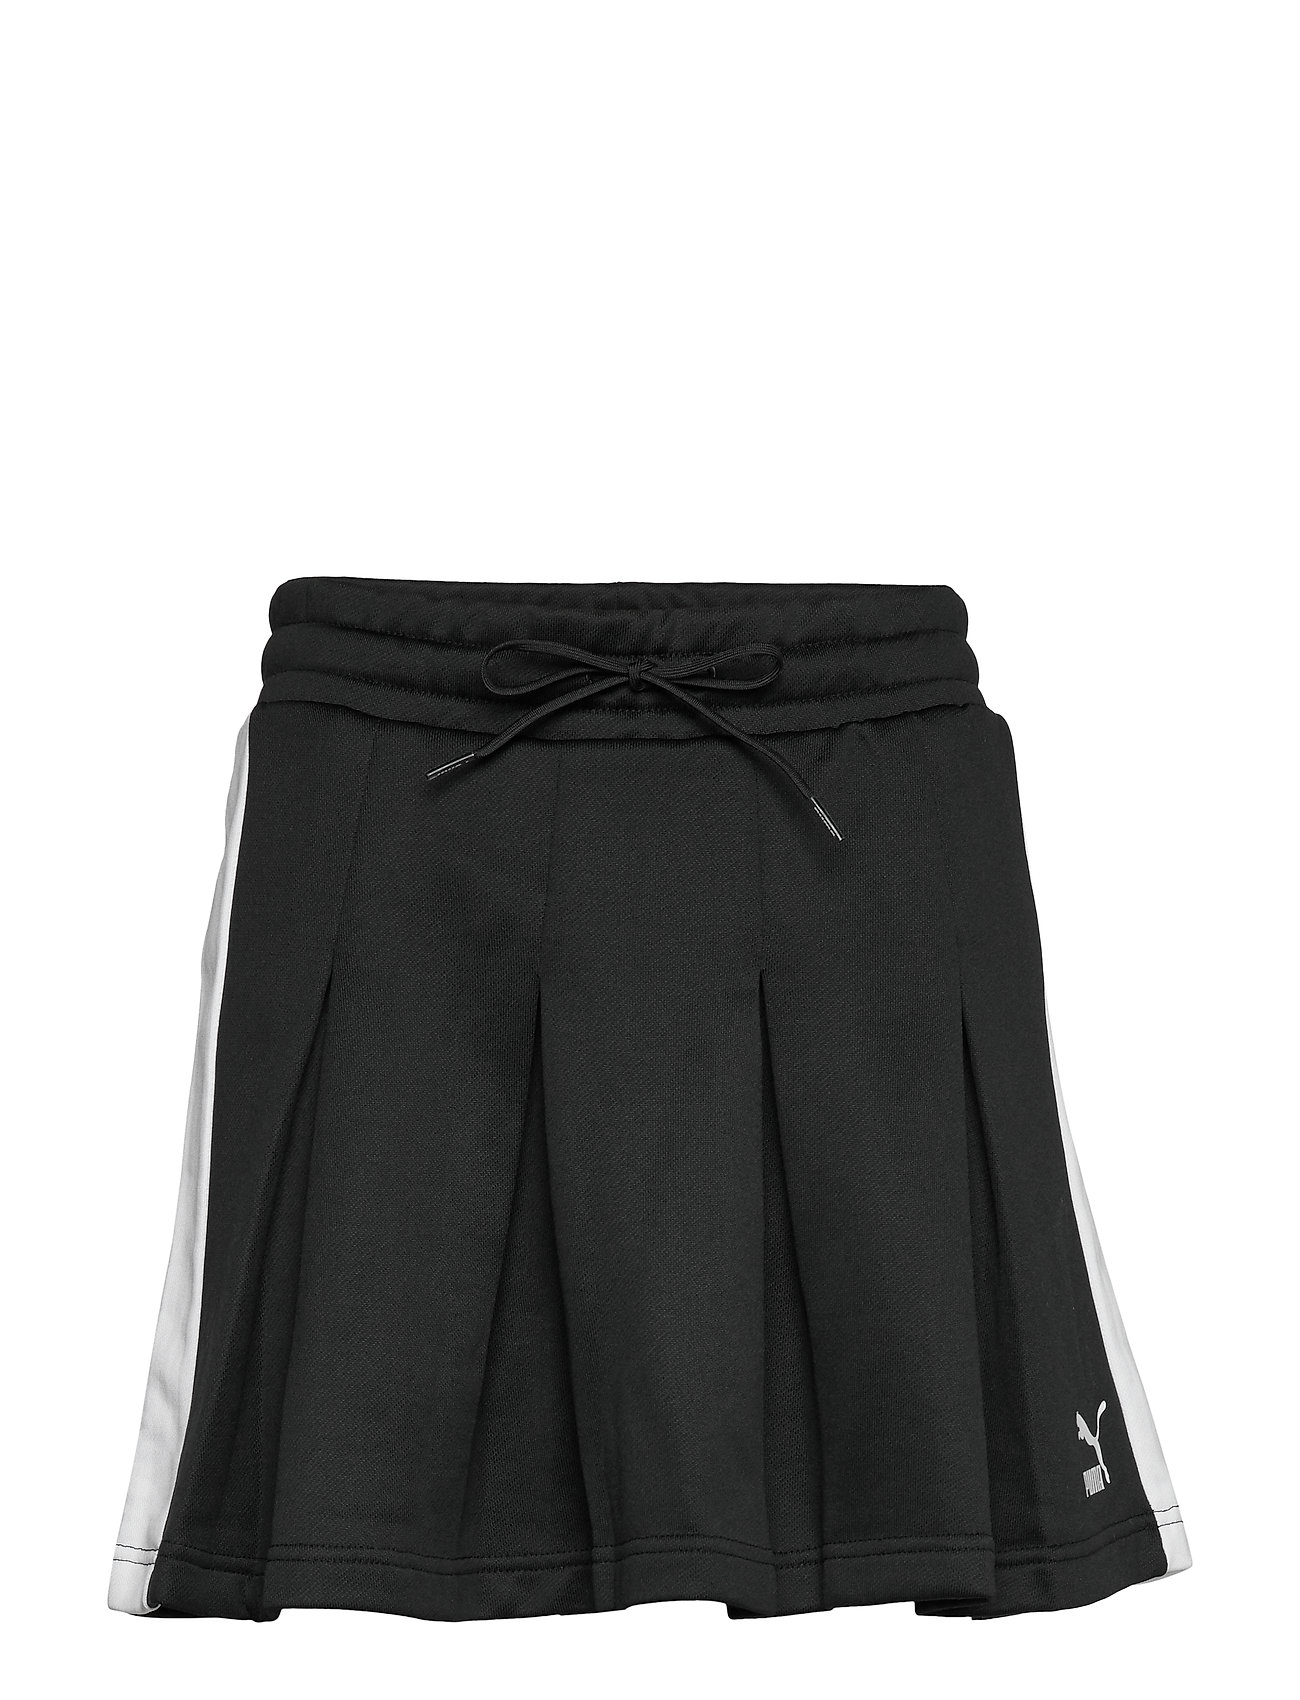 puma pleated skirt